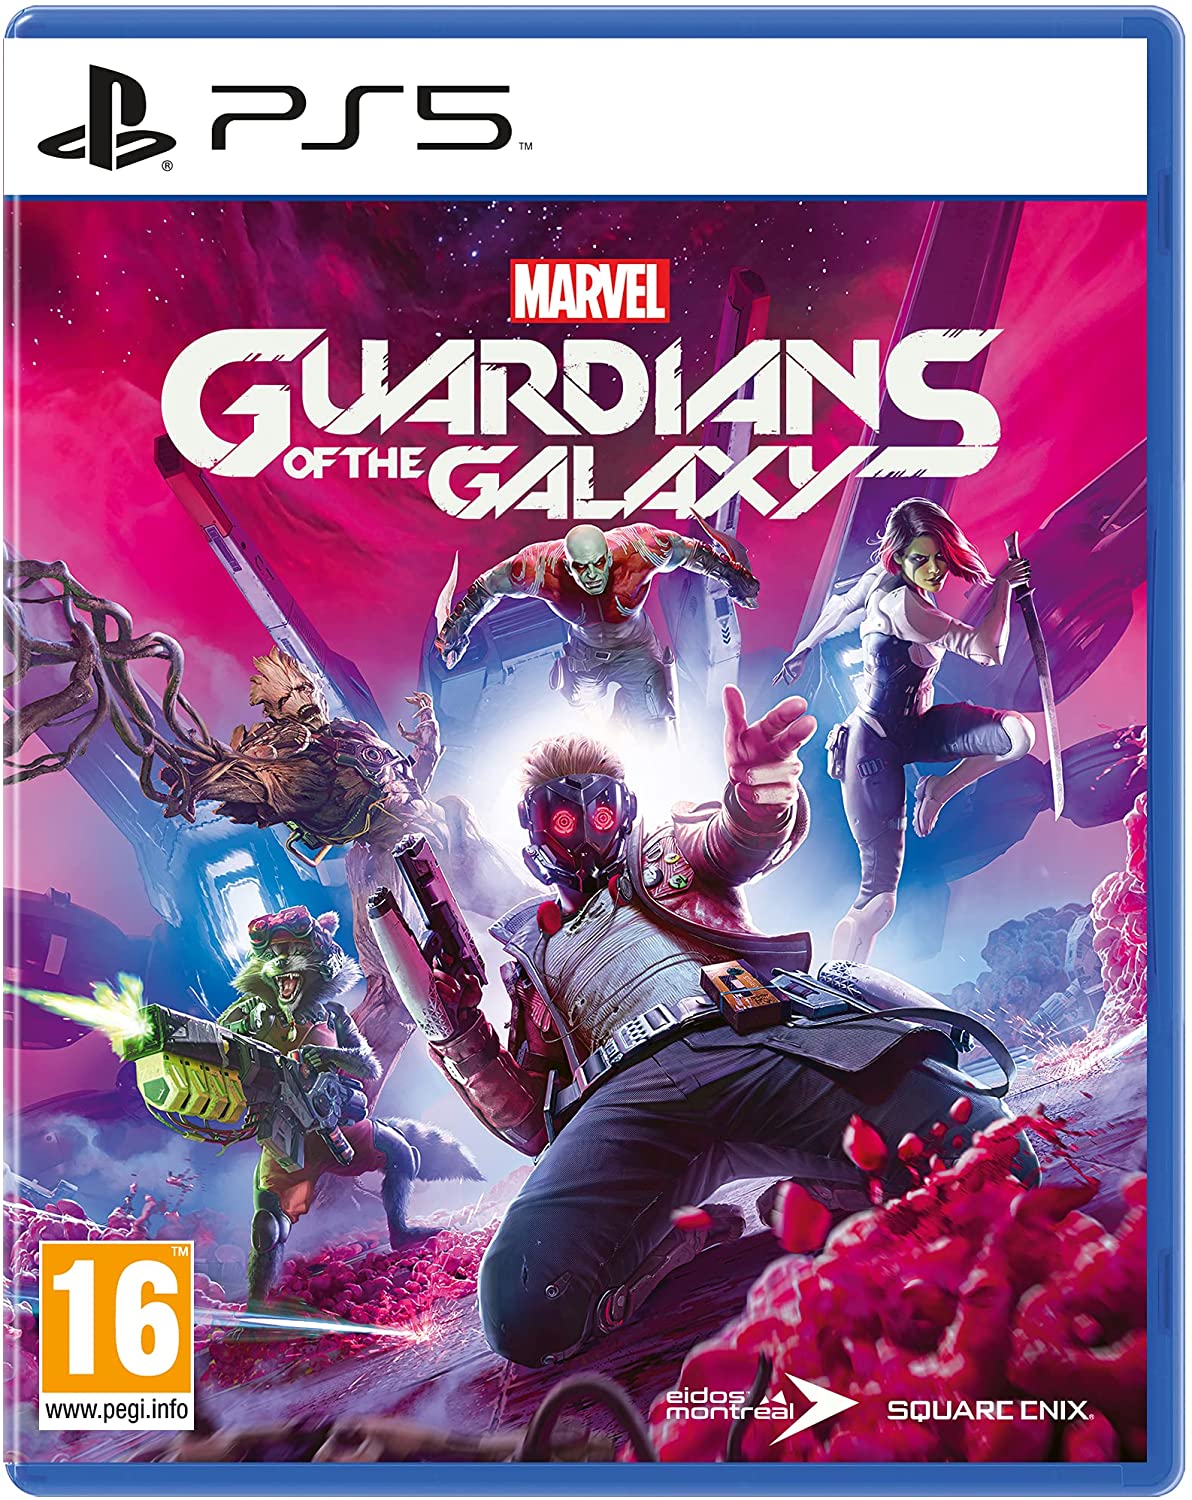 
                                    
                                Tra musica anni '80 e azione scanzonata, la prova del videogioco Marvel’s Guardians of the Galaxy